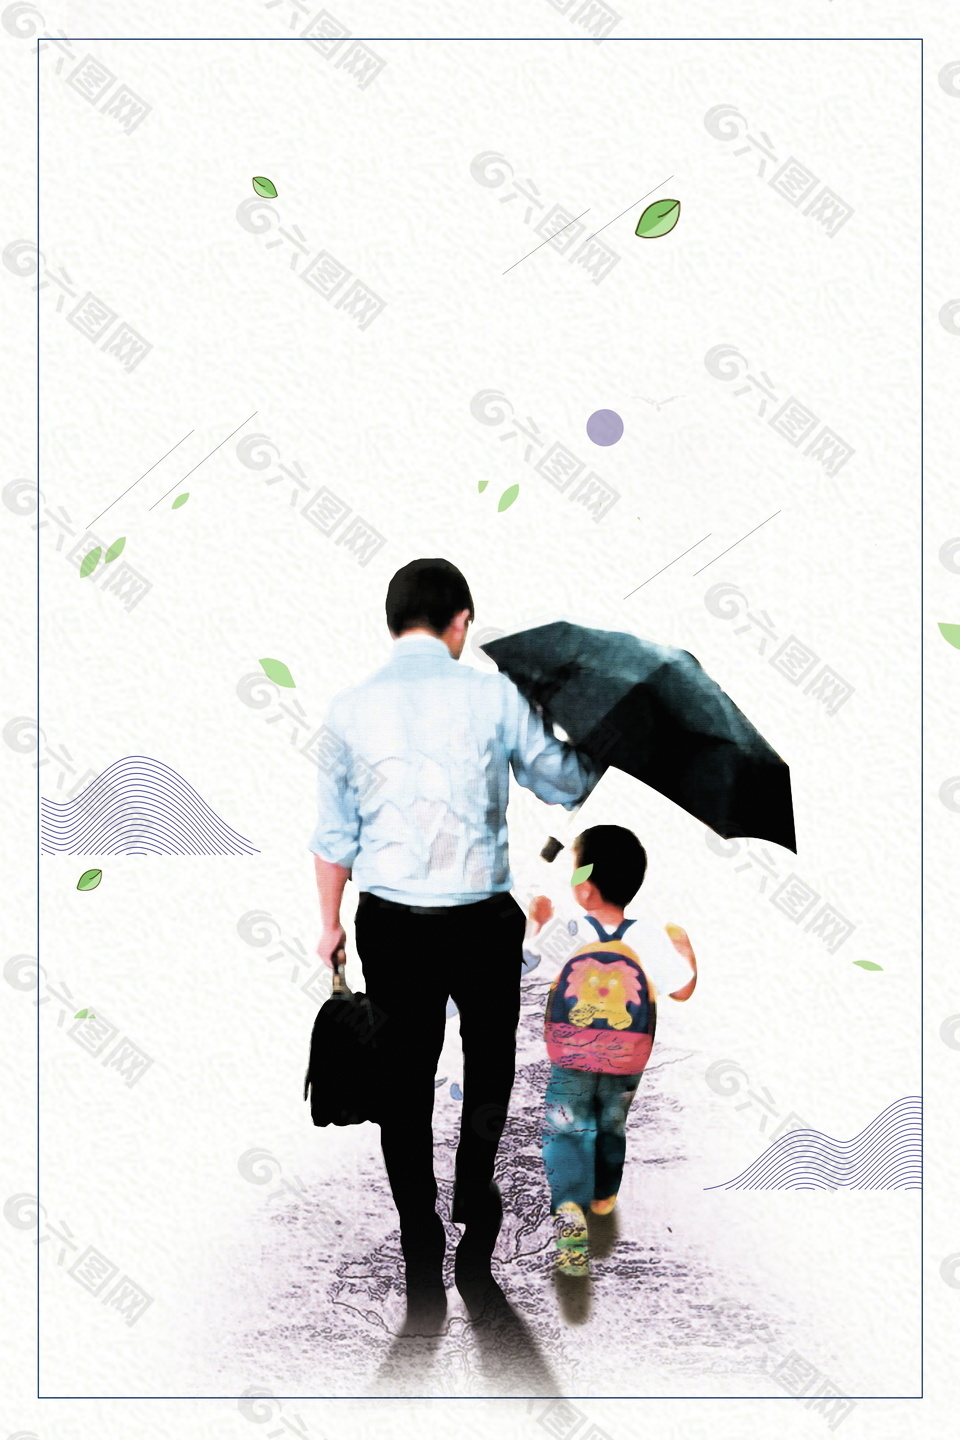 本次背景                        作品主题是雨中父子父亲节背景图